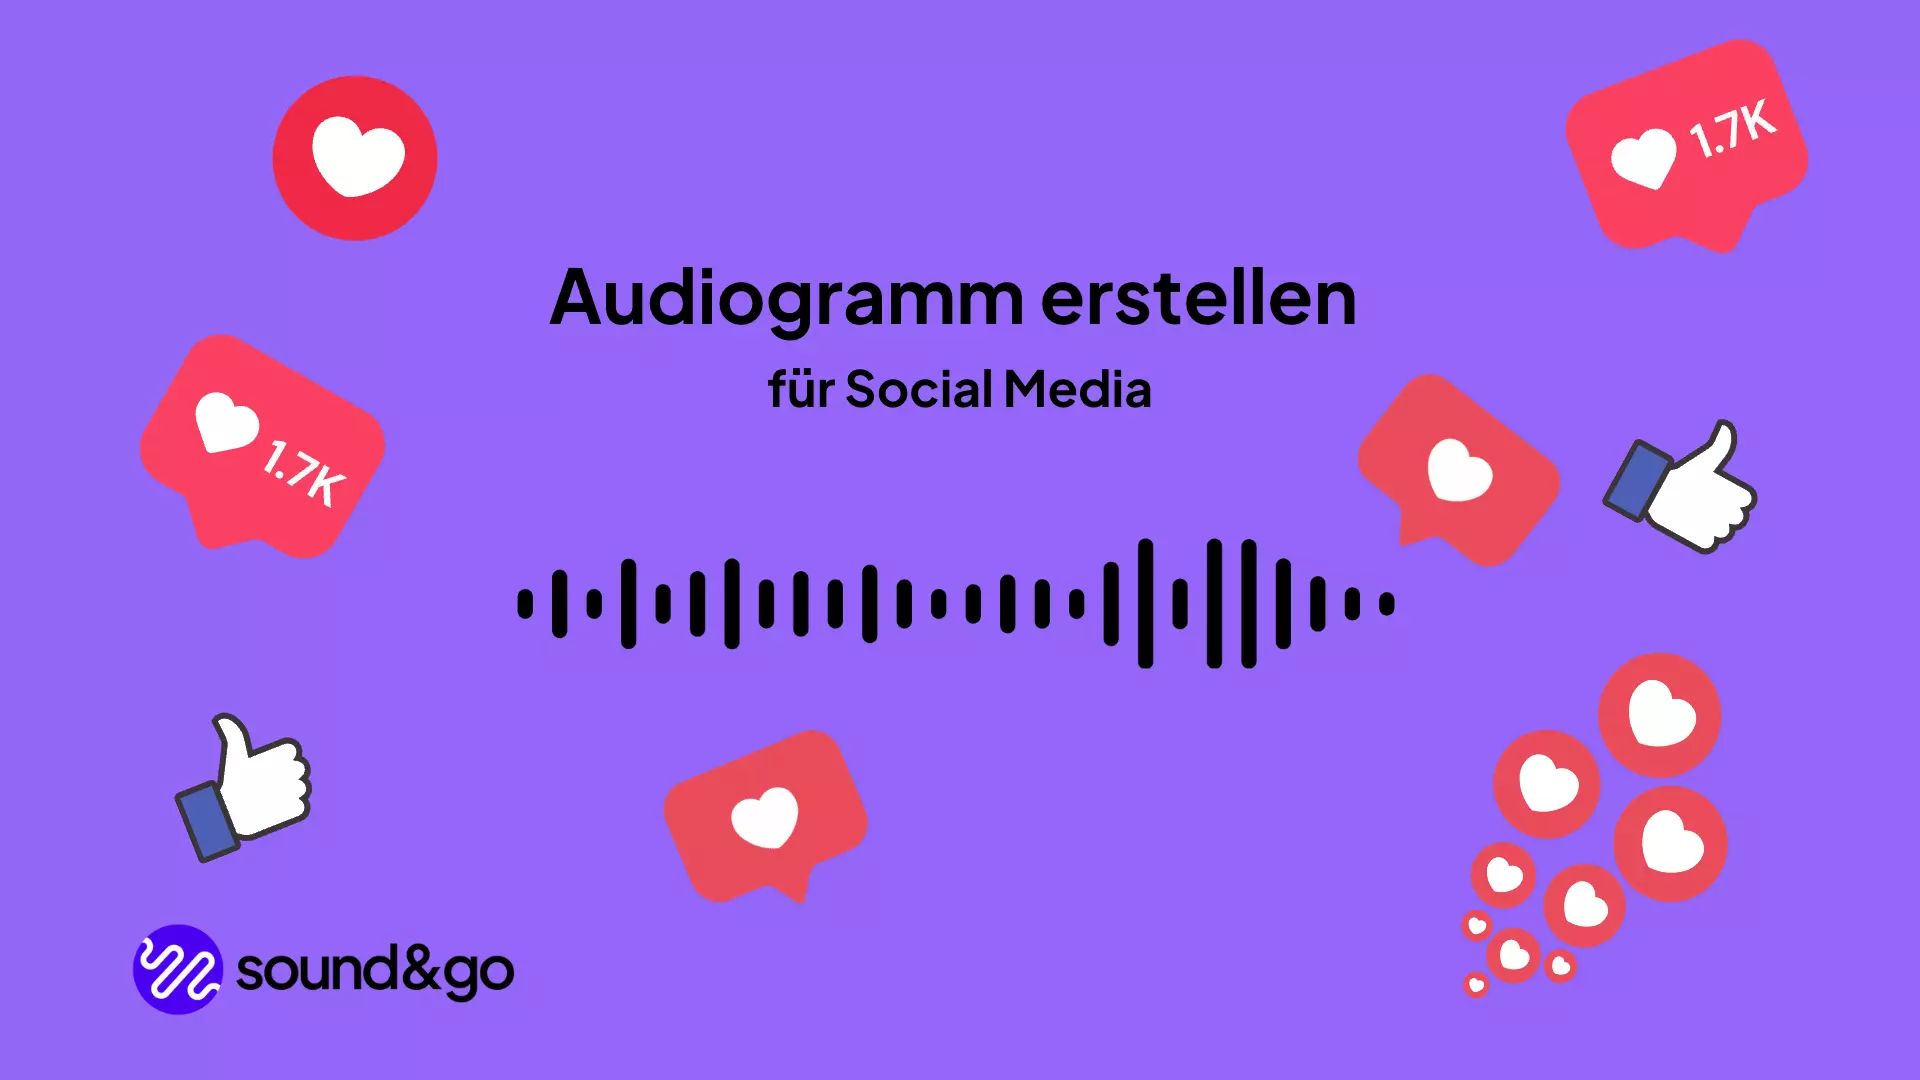 Audiogramm erstellen Podcast - kostenlos Audiogramme erstellen Social Media Audiogram free